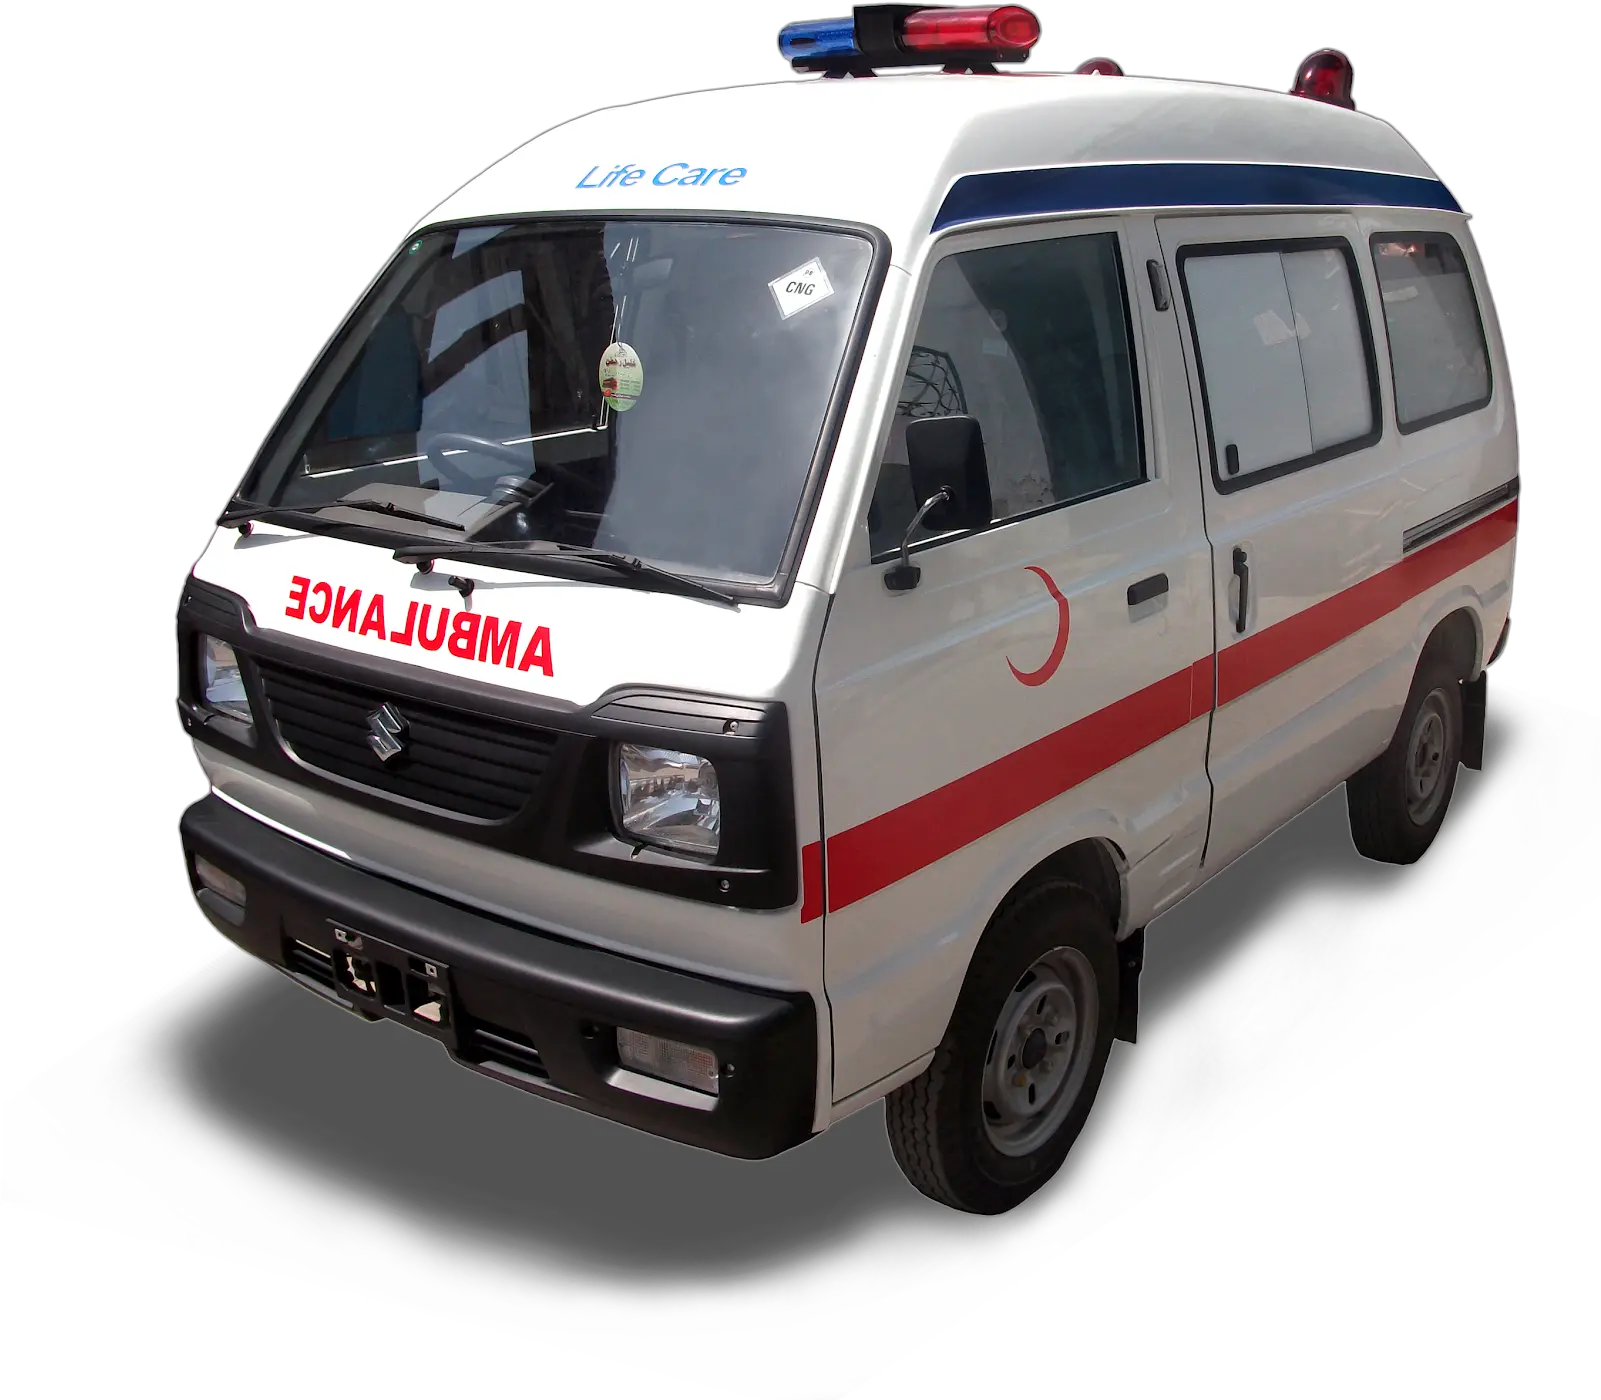 Ahmad Medix Life Care Ambulance Suzuki Bolan Ambulance Picture Pakistan Png Ambulance Png